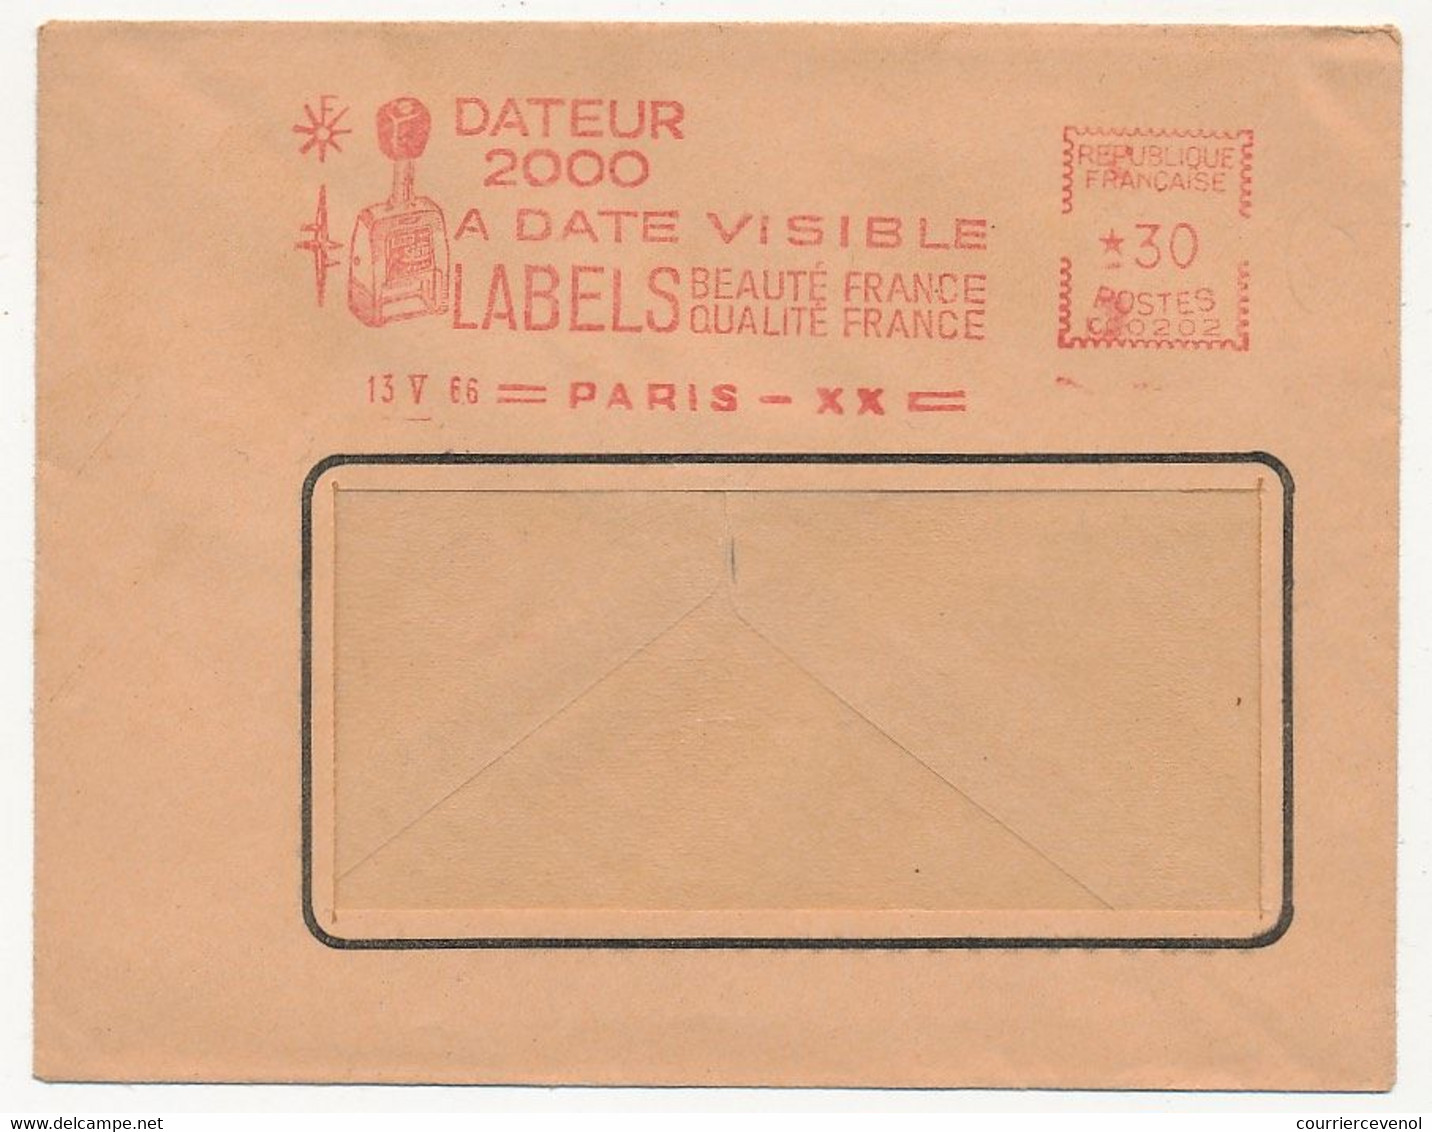 FRANCE - Env Fenêtre EMA - Dateur 2000 à Date Visible - LABELS Beauté France Qualité F... PARIS XX - 13/5/1966 - EMA (Printer Machine)